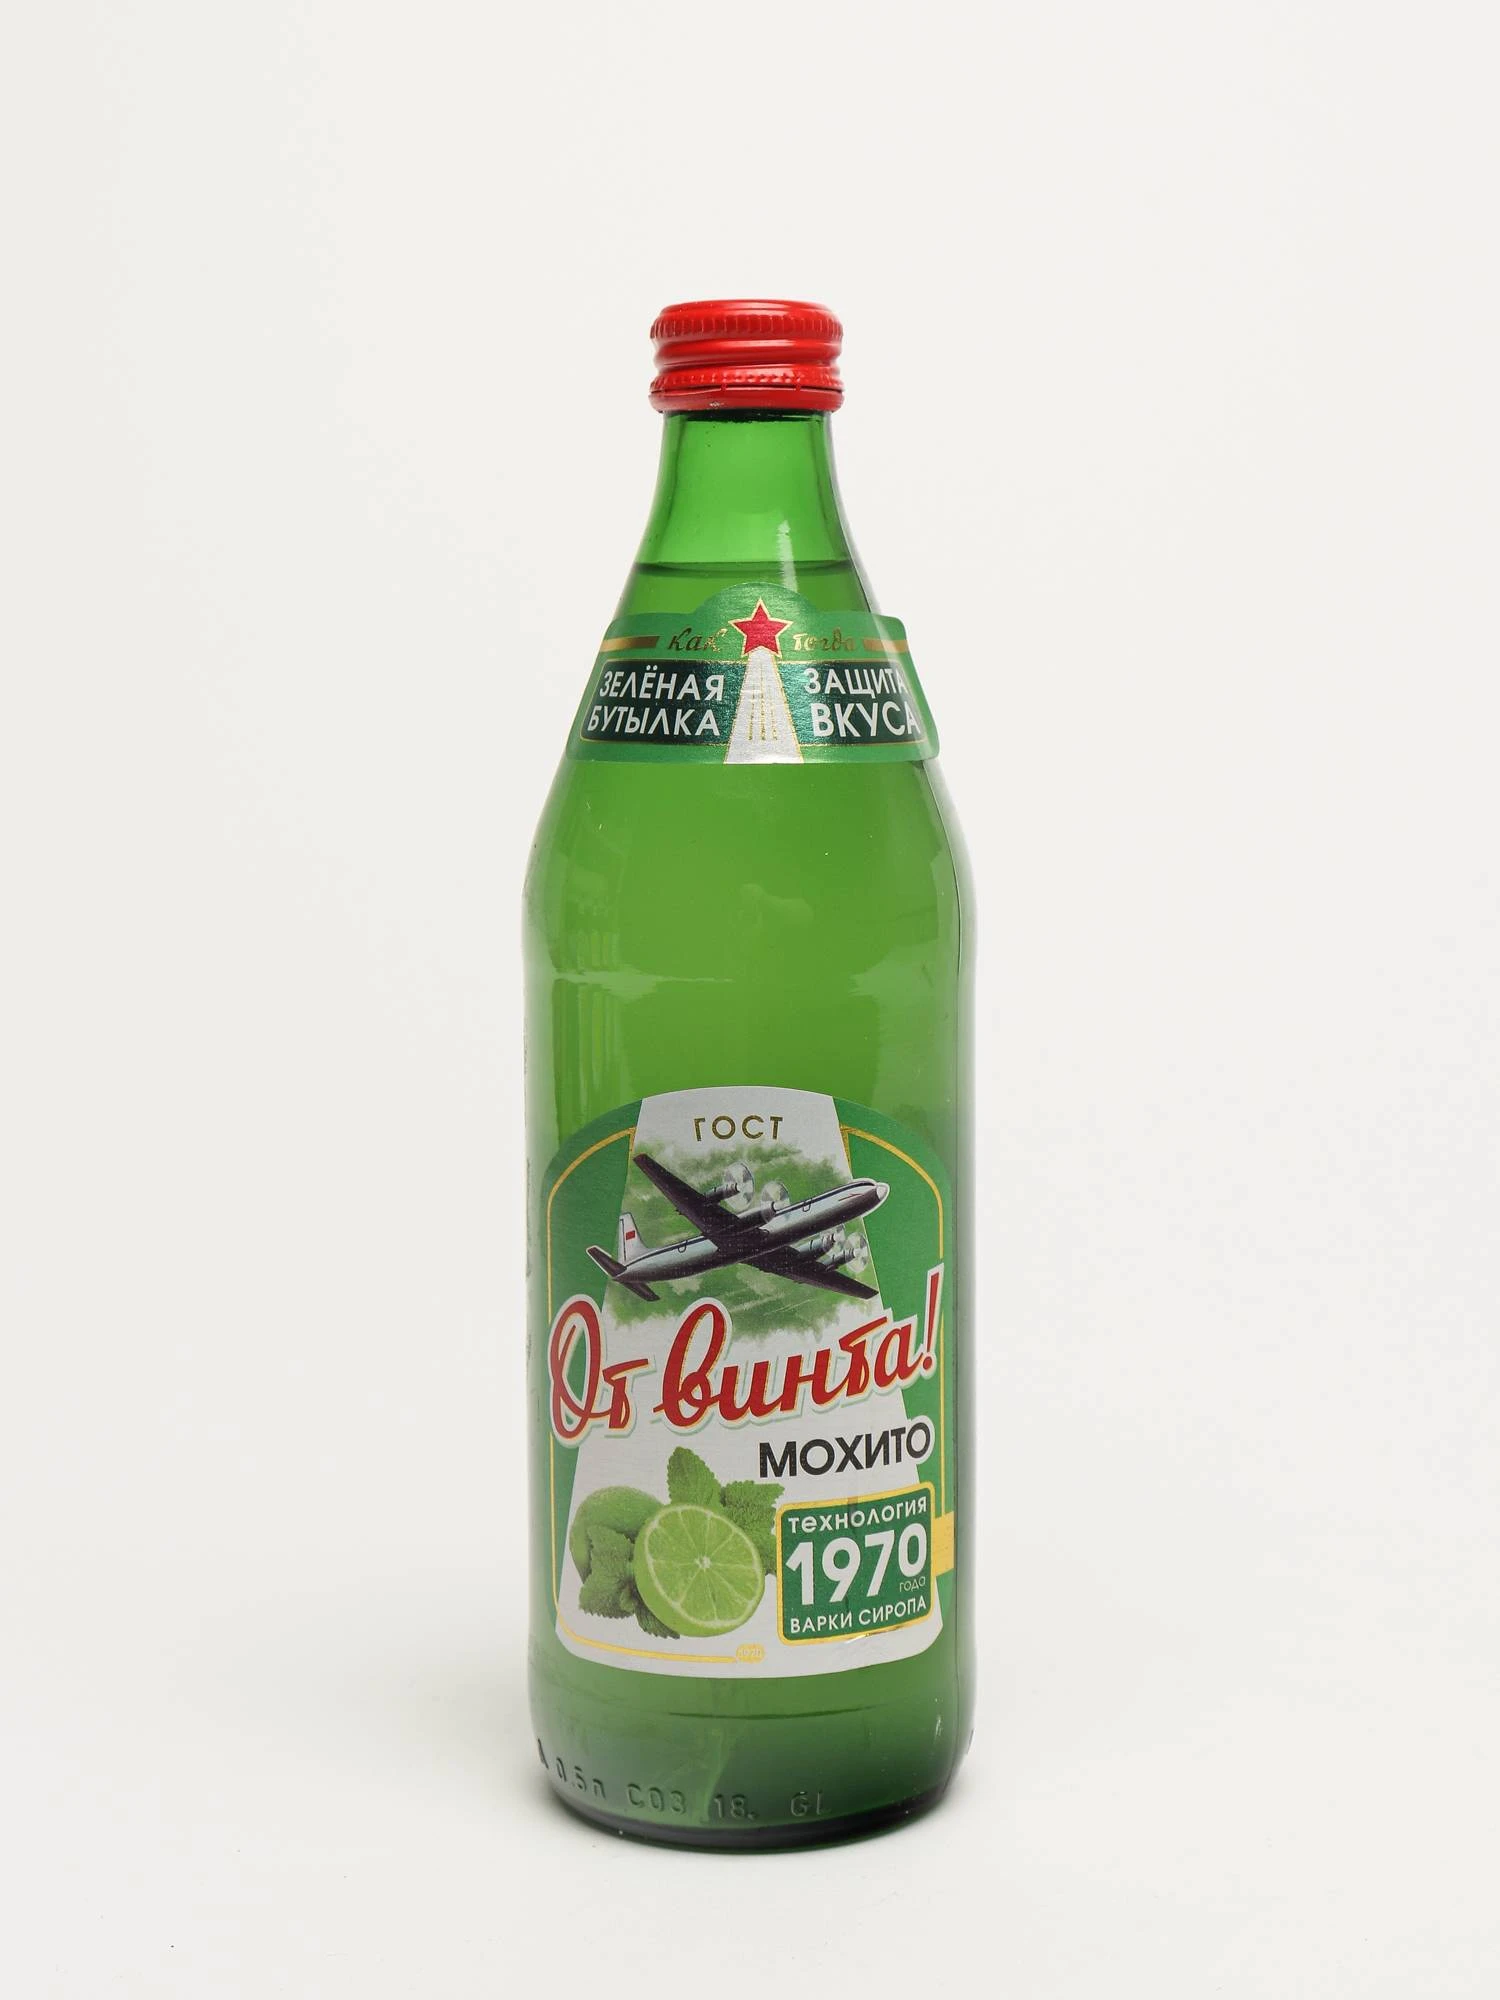 Газированная вода в зеленой бутылке. От винта Мохито. Лимонад от винта Мохито. От винта напиток. Мохито напиток.